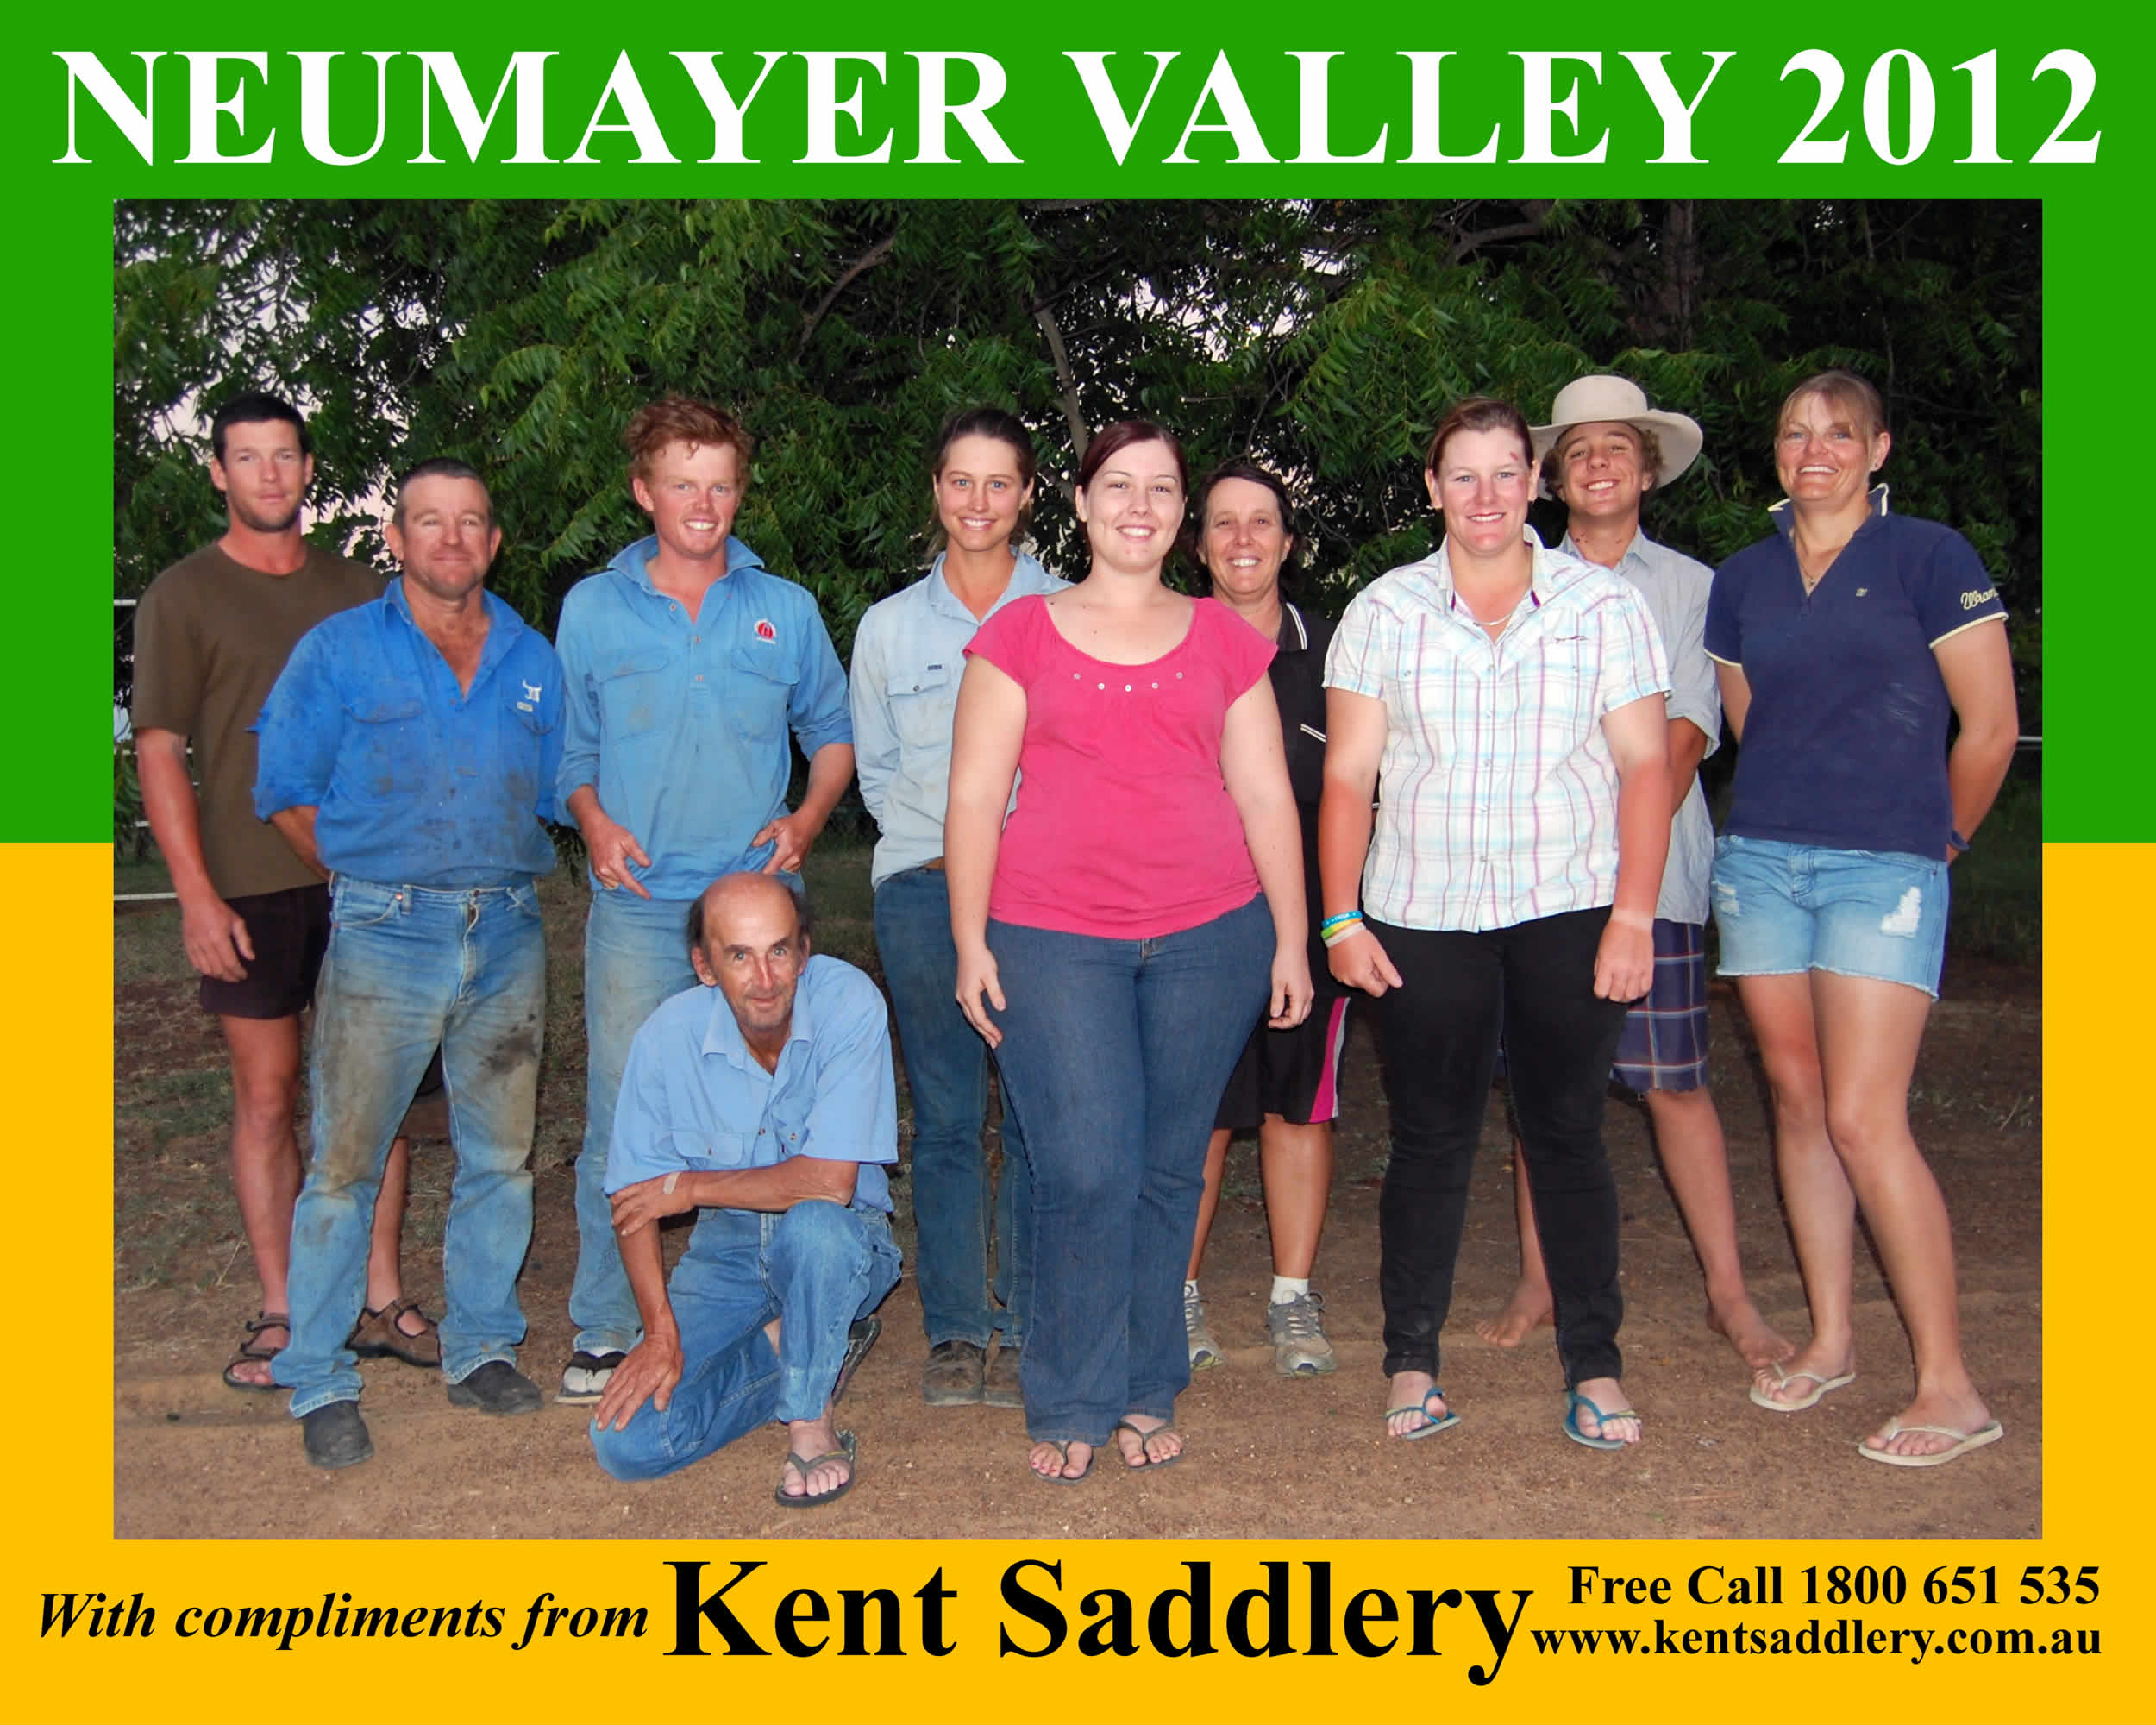 Queensland - Neumayer Valley 14